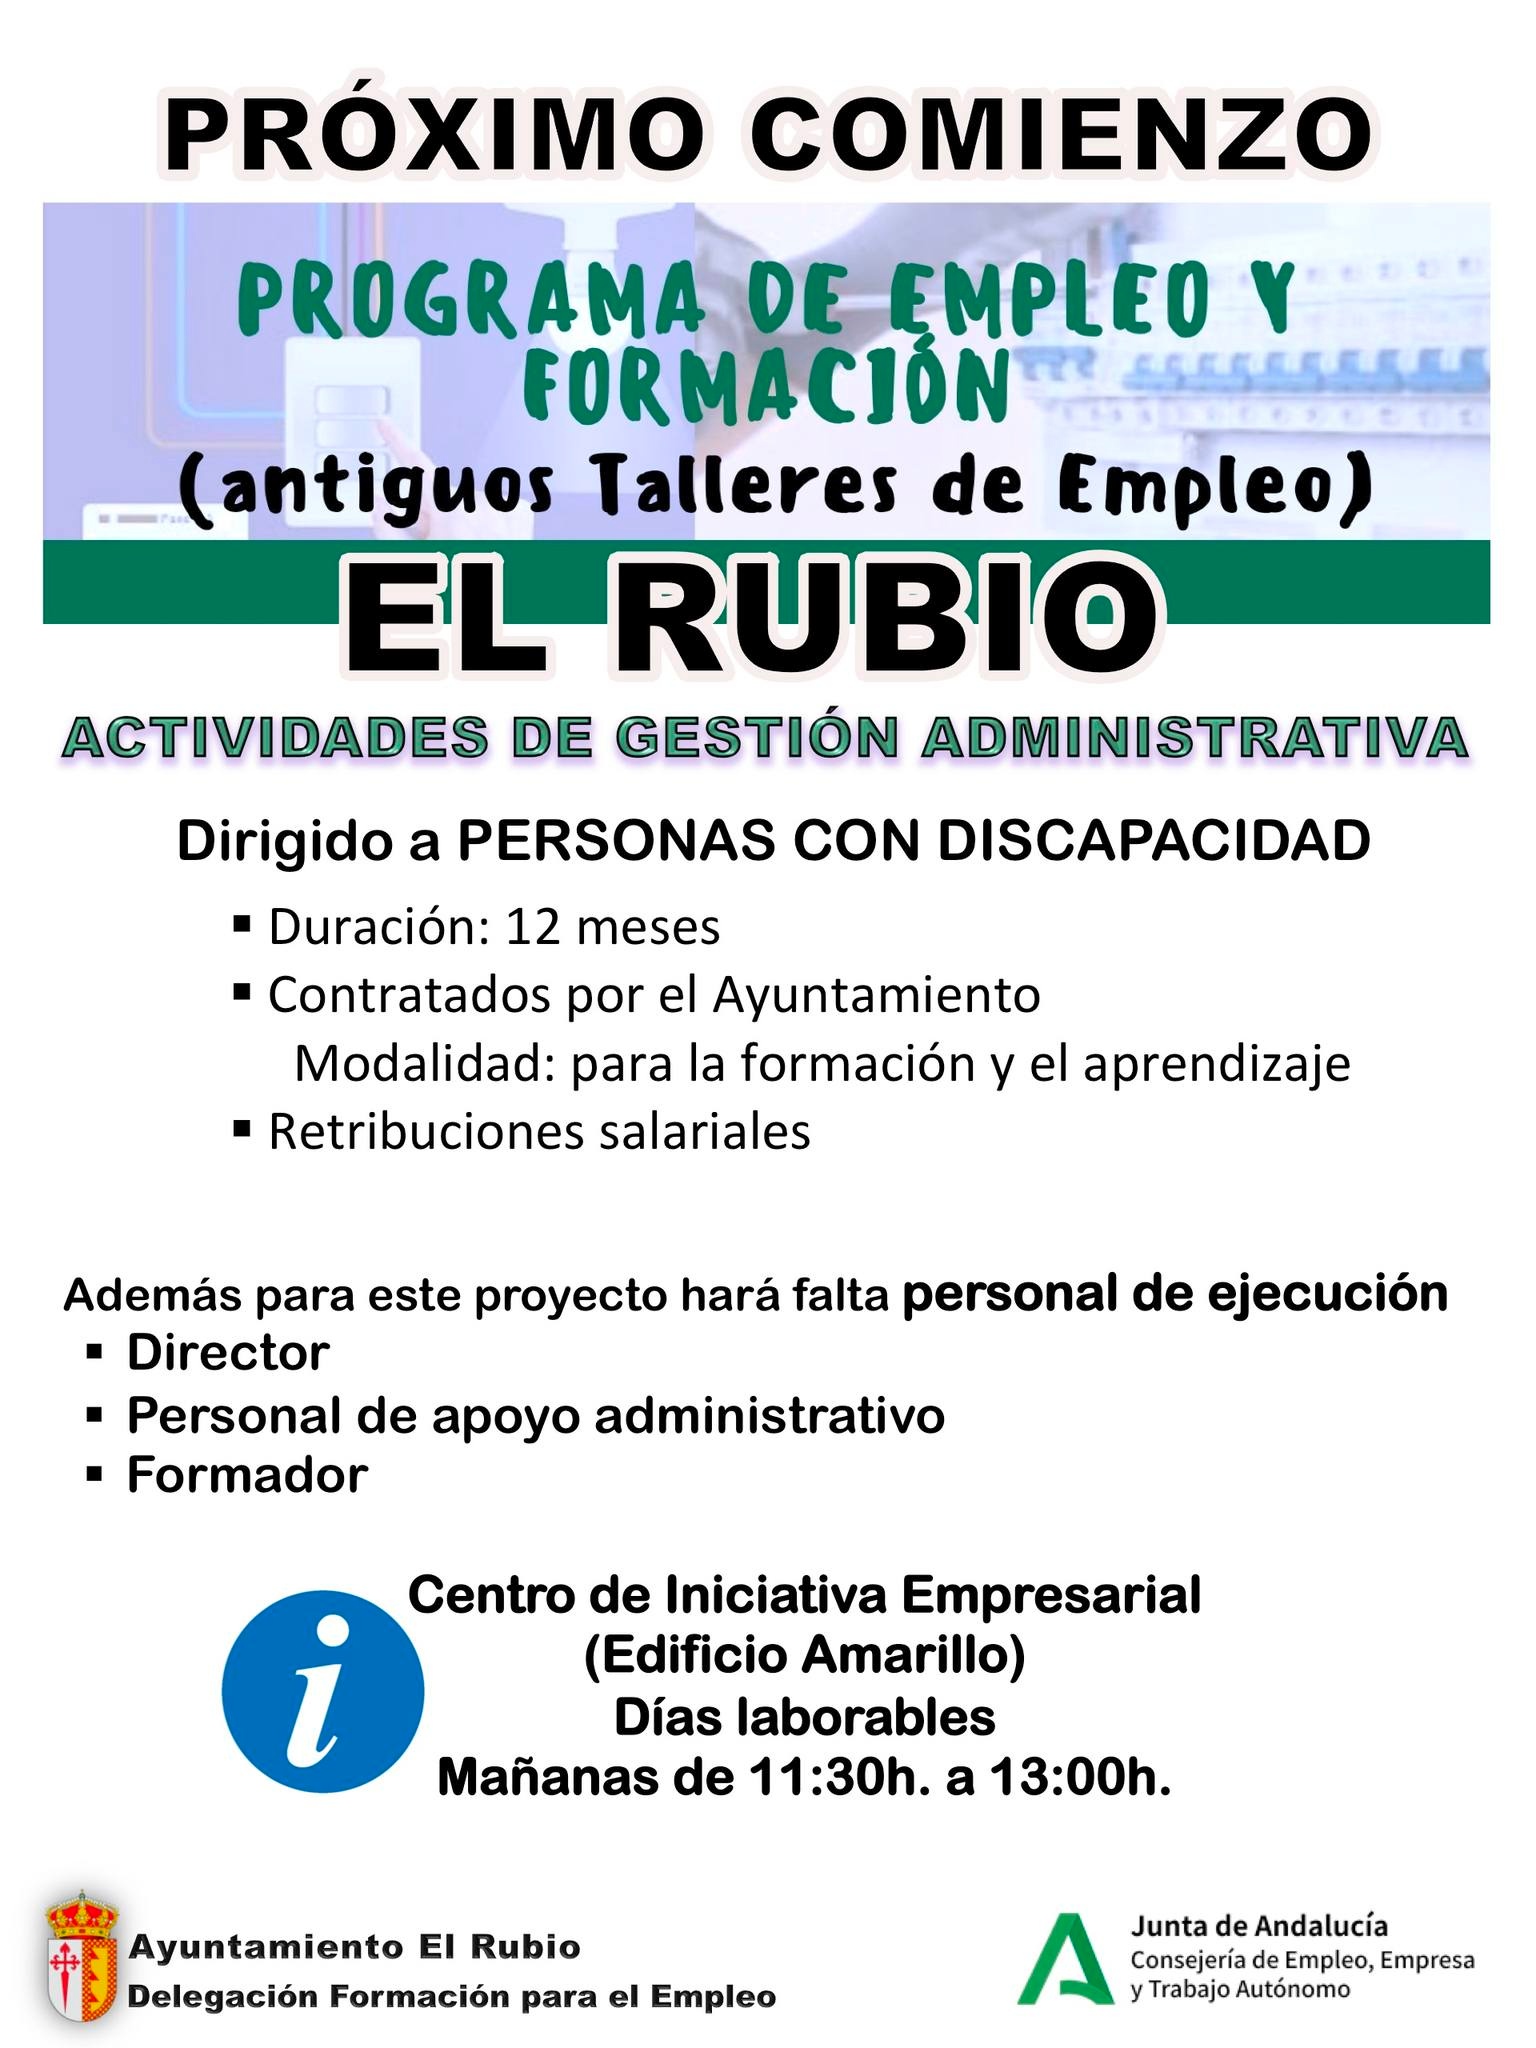 PROGRAMA DE EMPLEO Y FORMACIÓN EN EL RUBIO